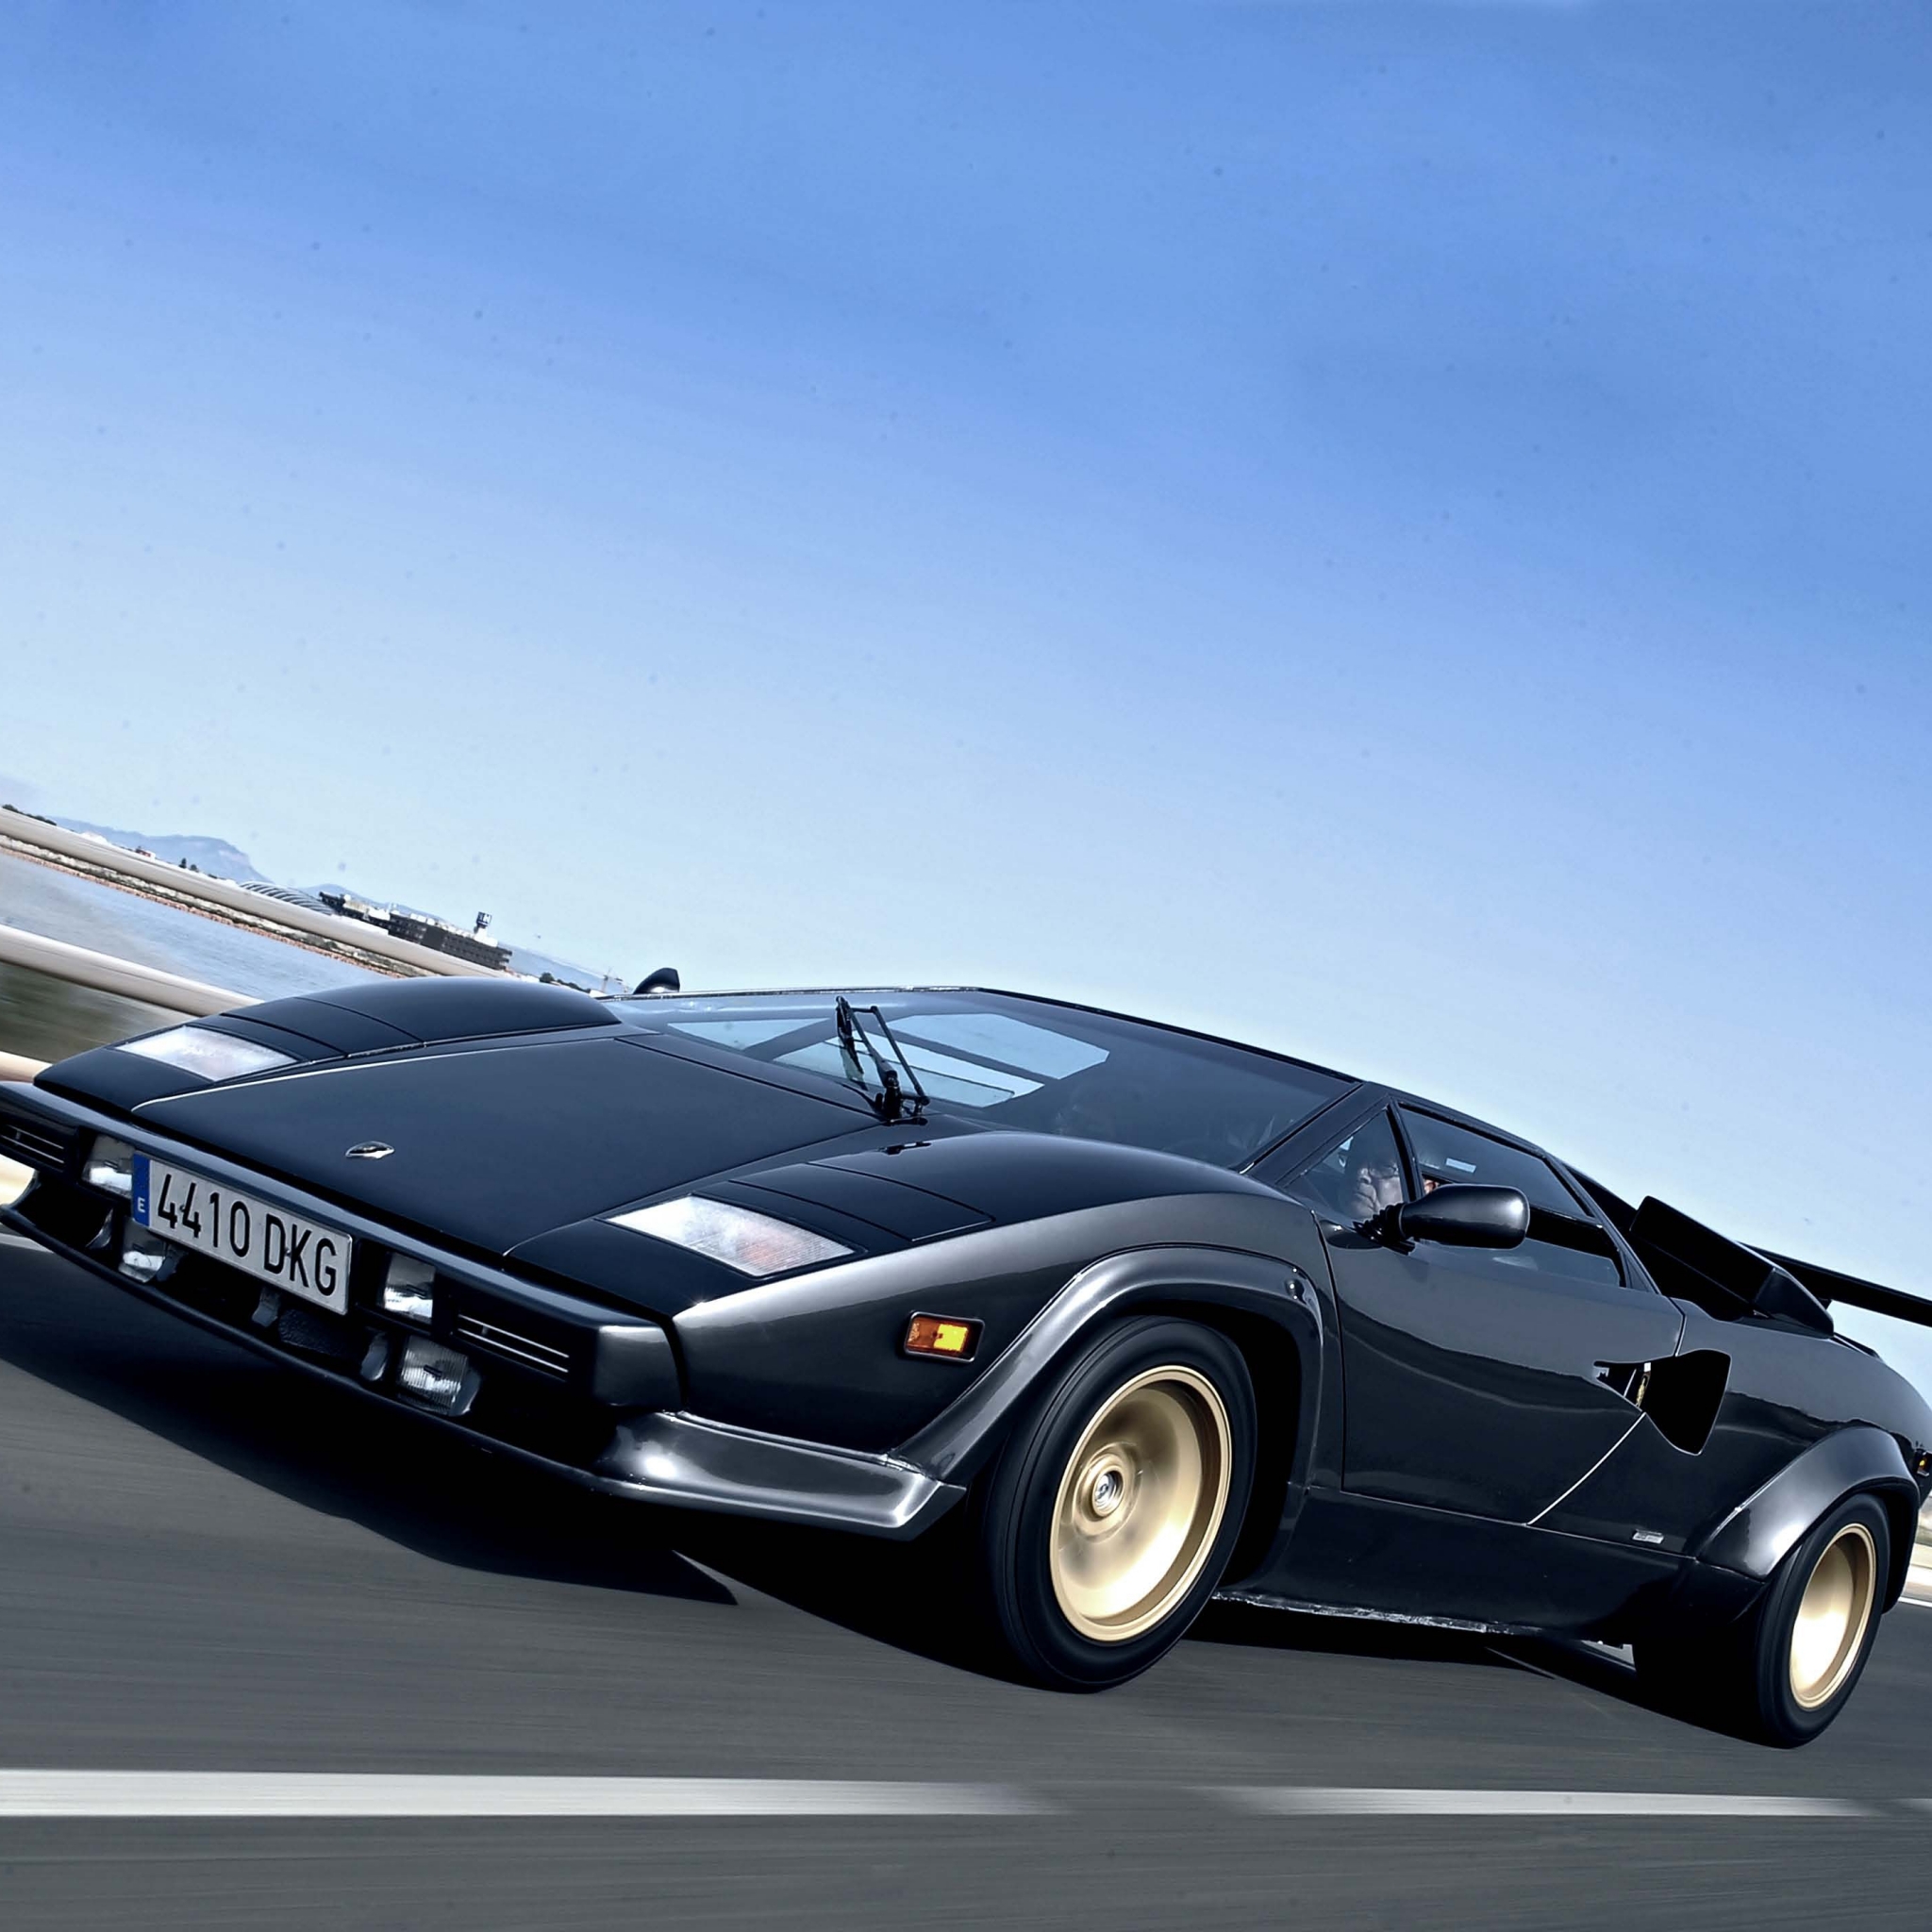 Descarga gratuita de fondo de pantalla para móvil de Lamborghini, Lamborghini Countach, Vehículos.